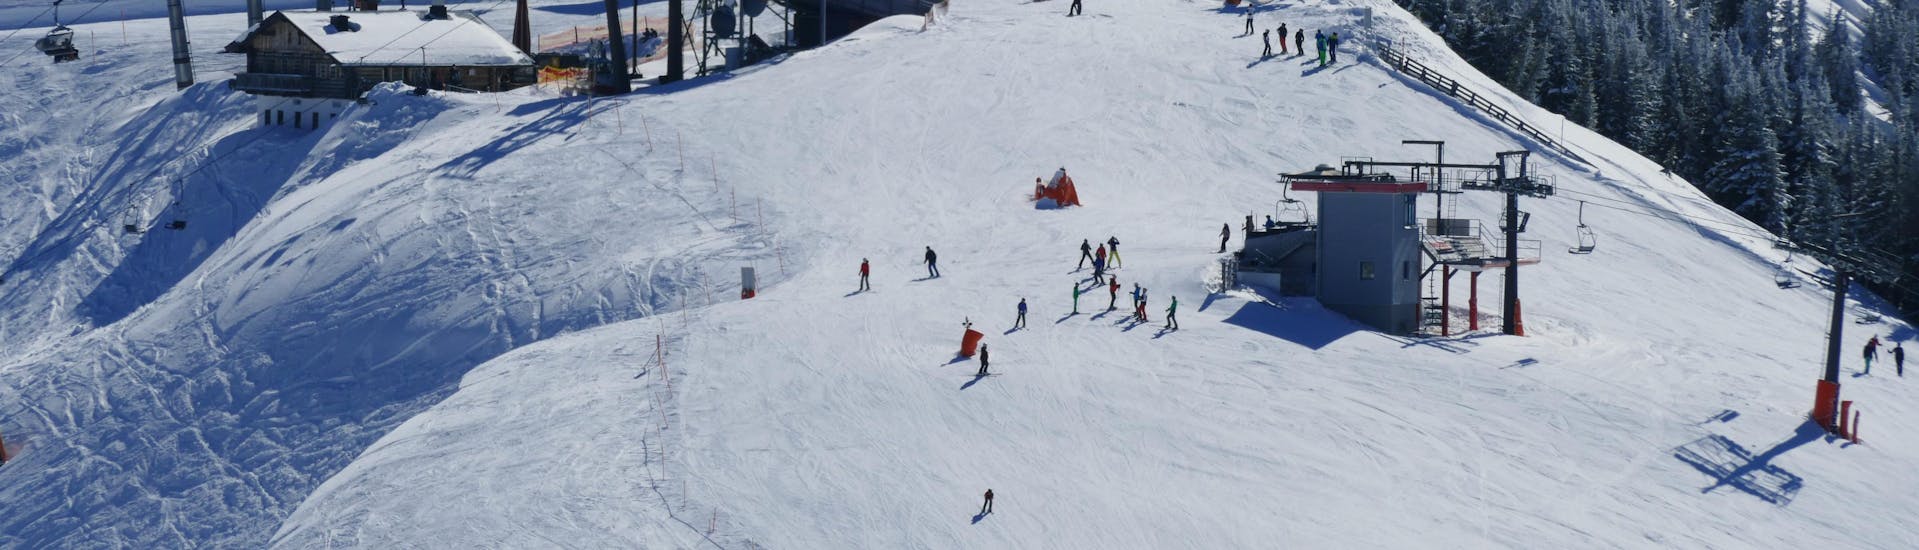 Adultos y niños esquiando en la estación de esquí de Grossarl.